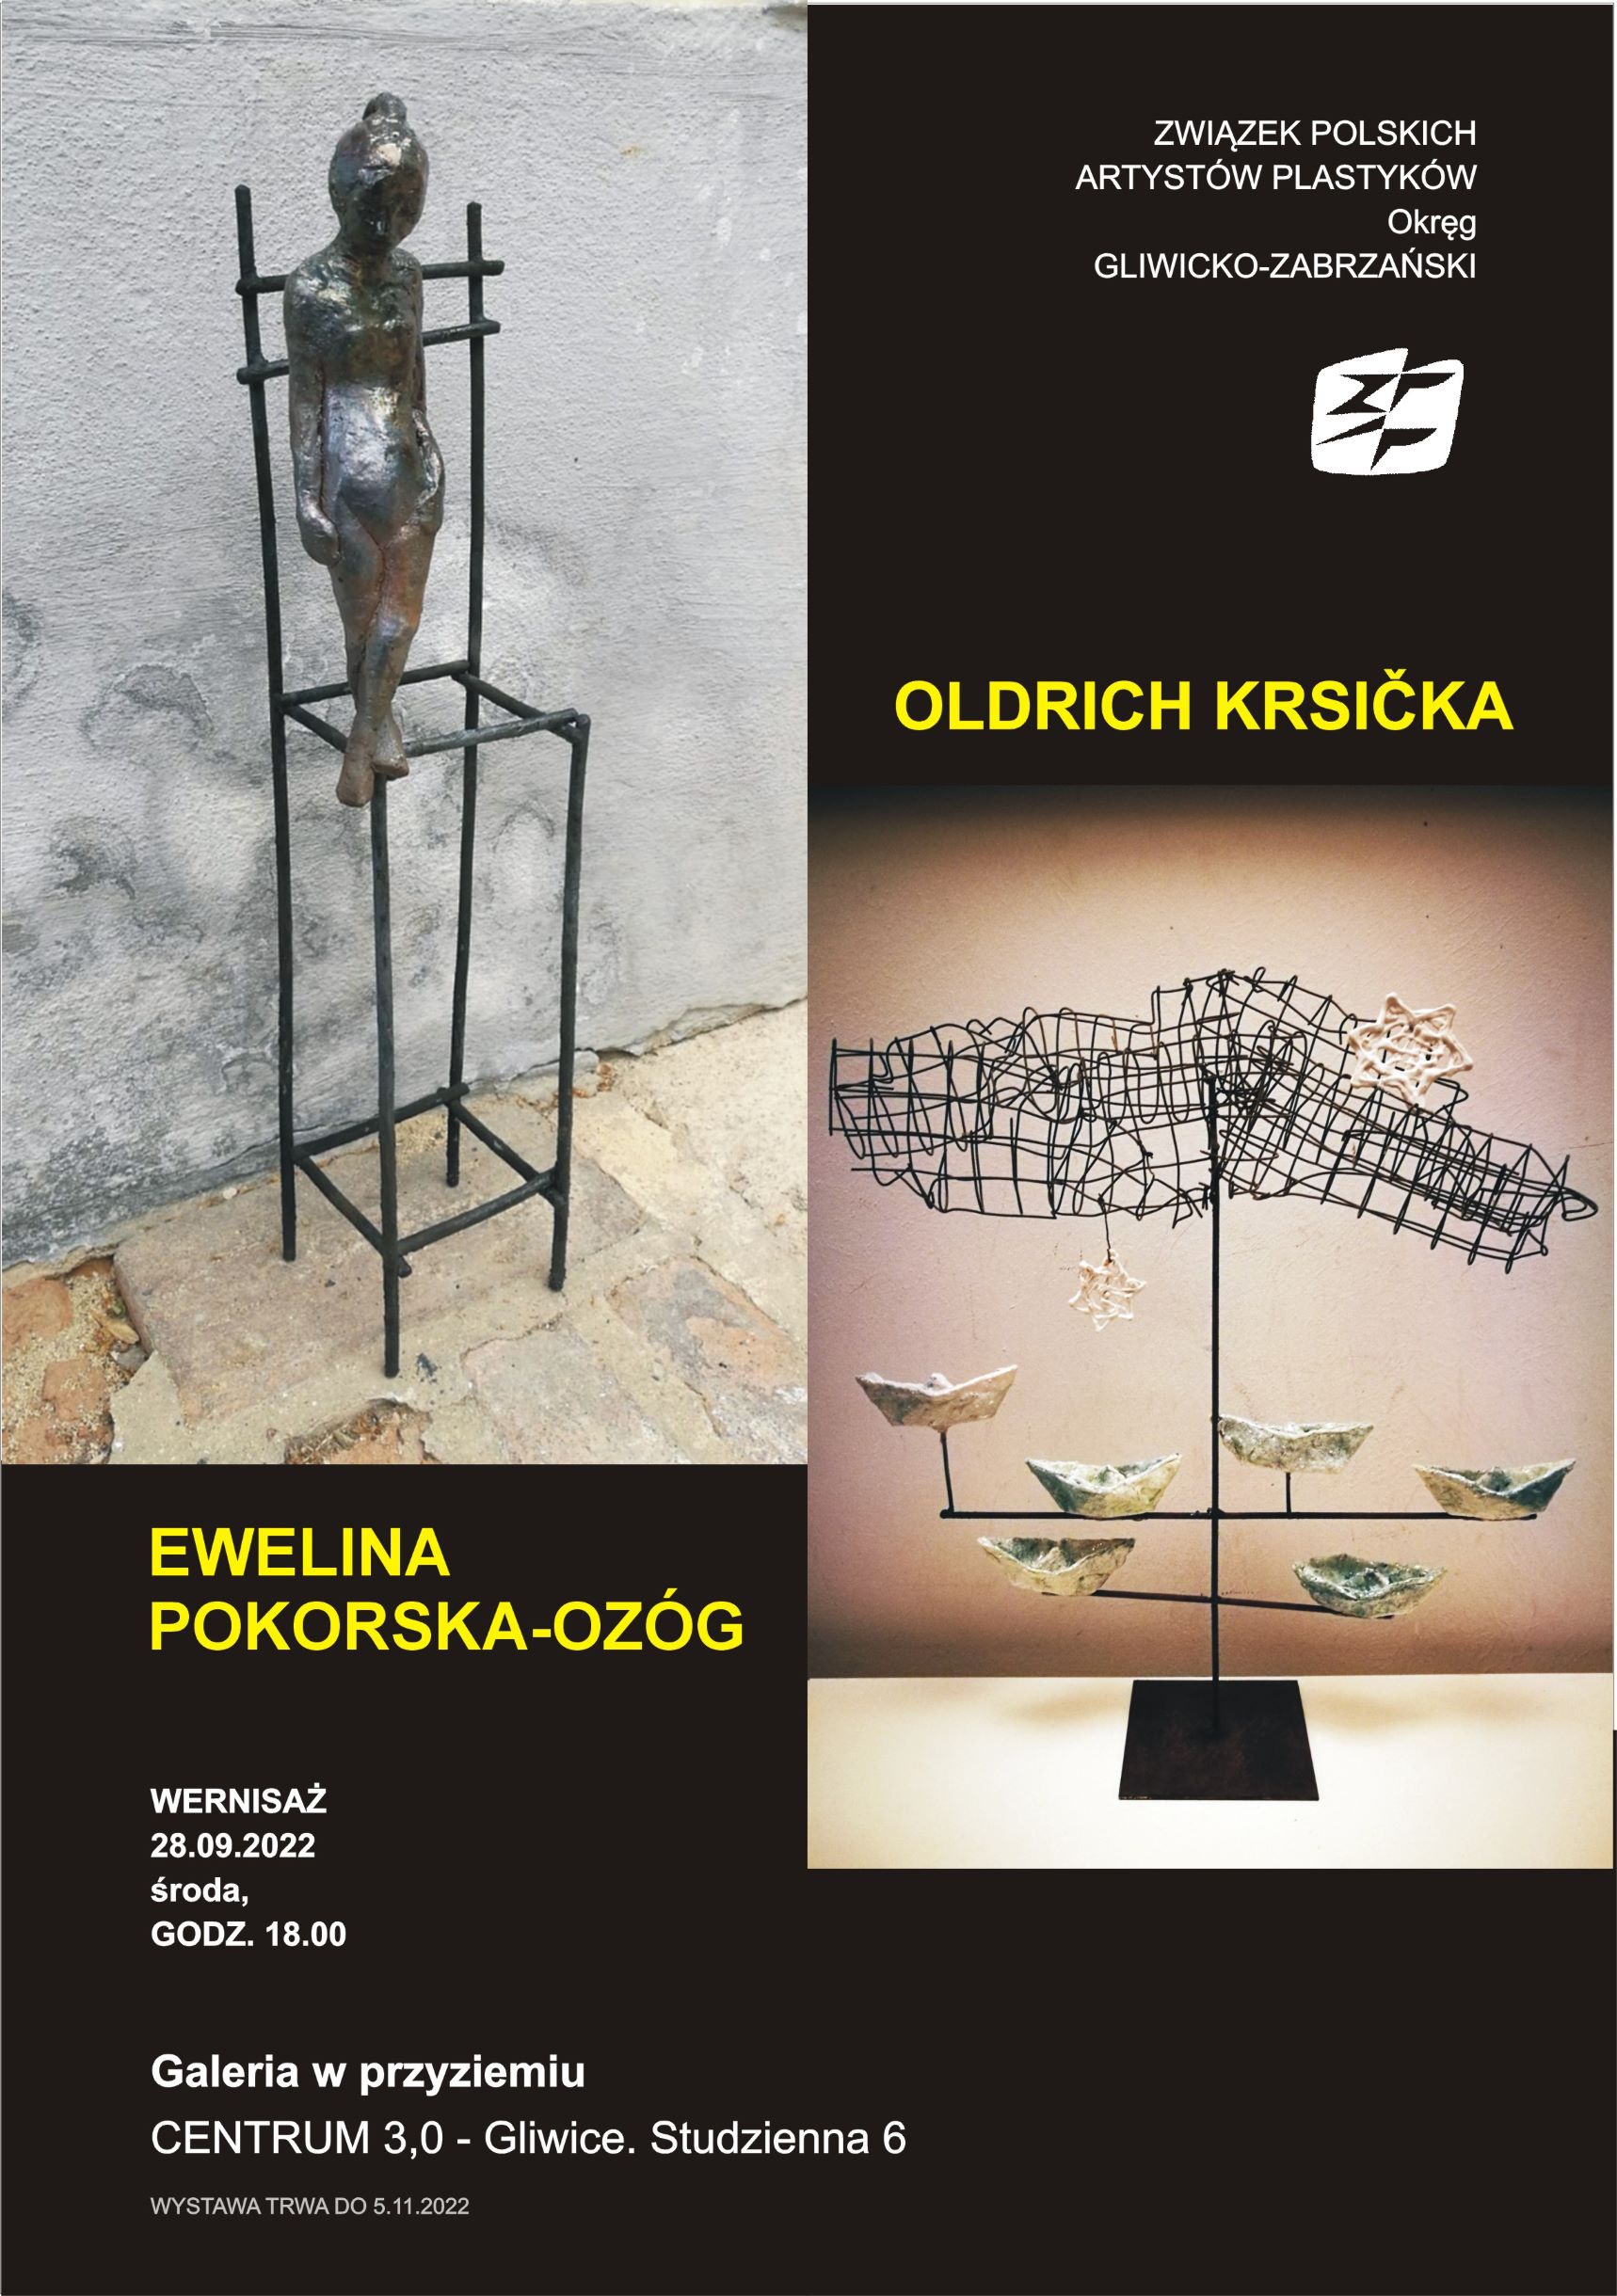 Ewa Pokorska-Ożóg i Oldrich Krsicka - rzeźba